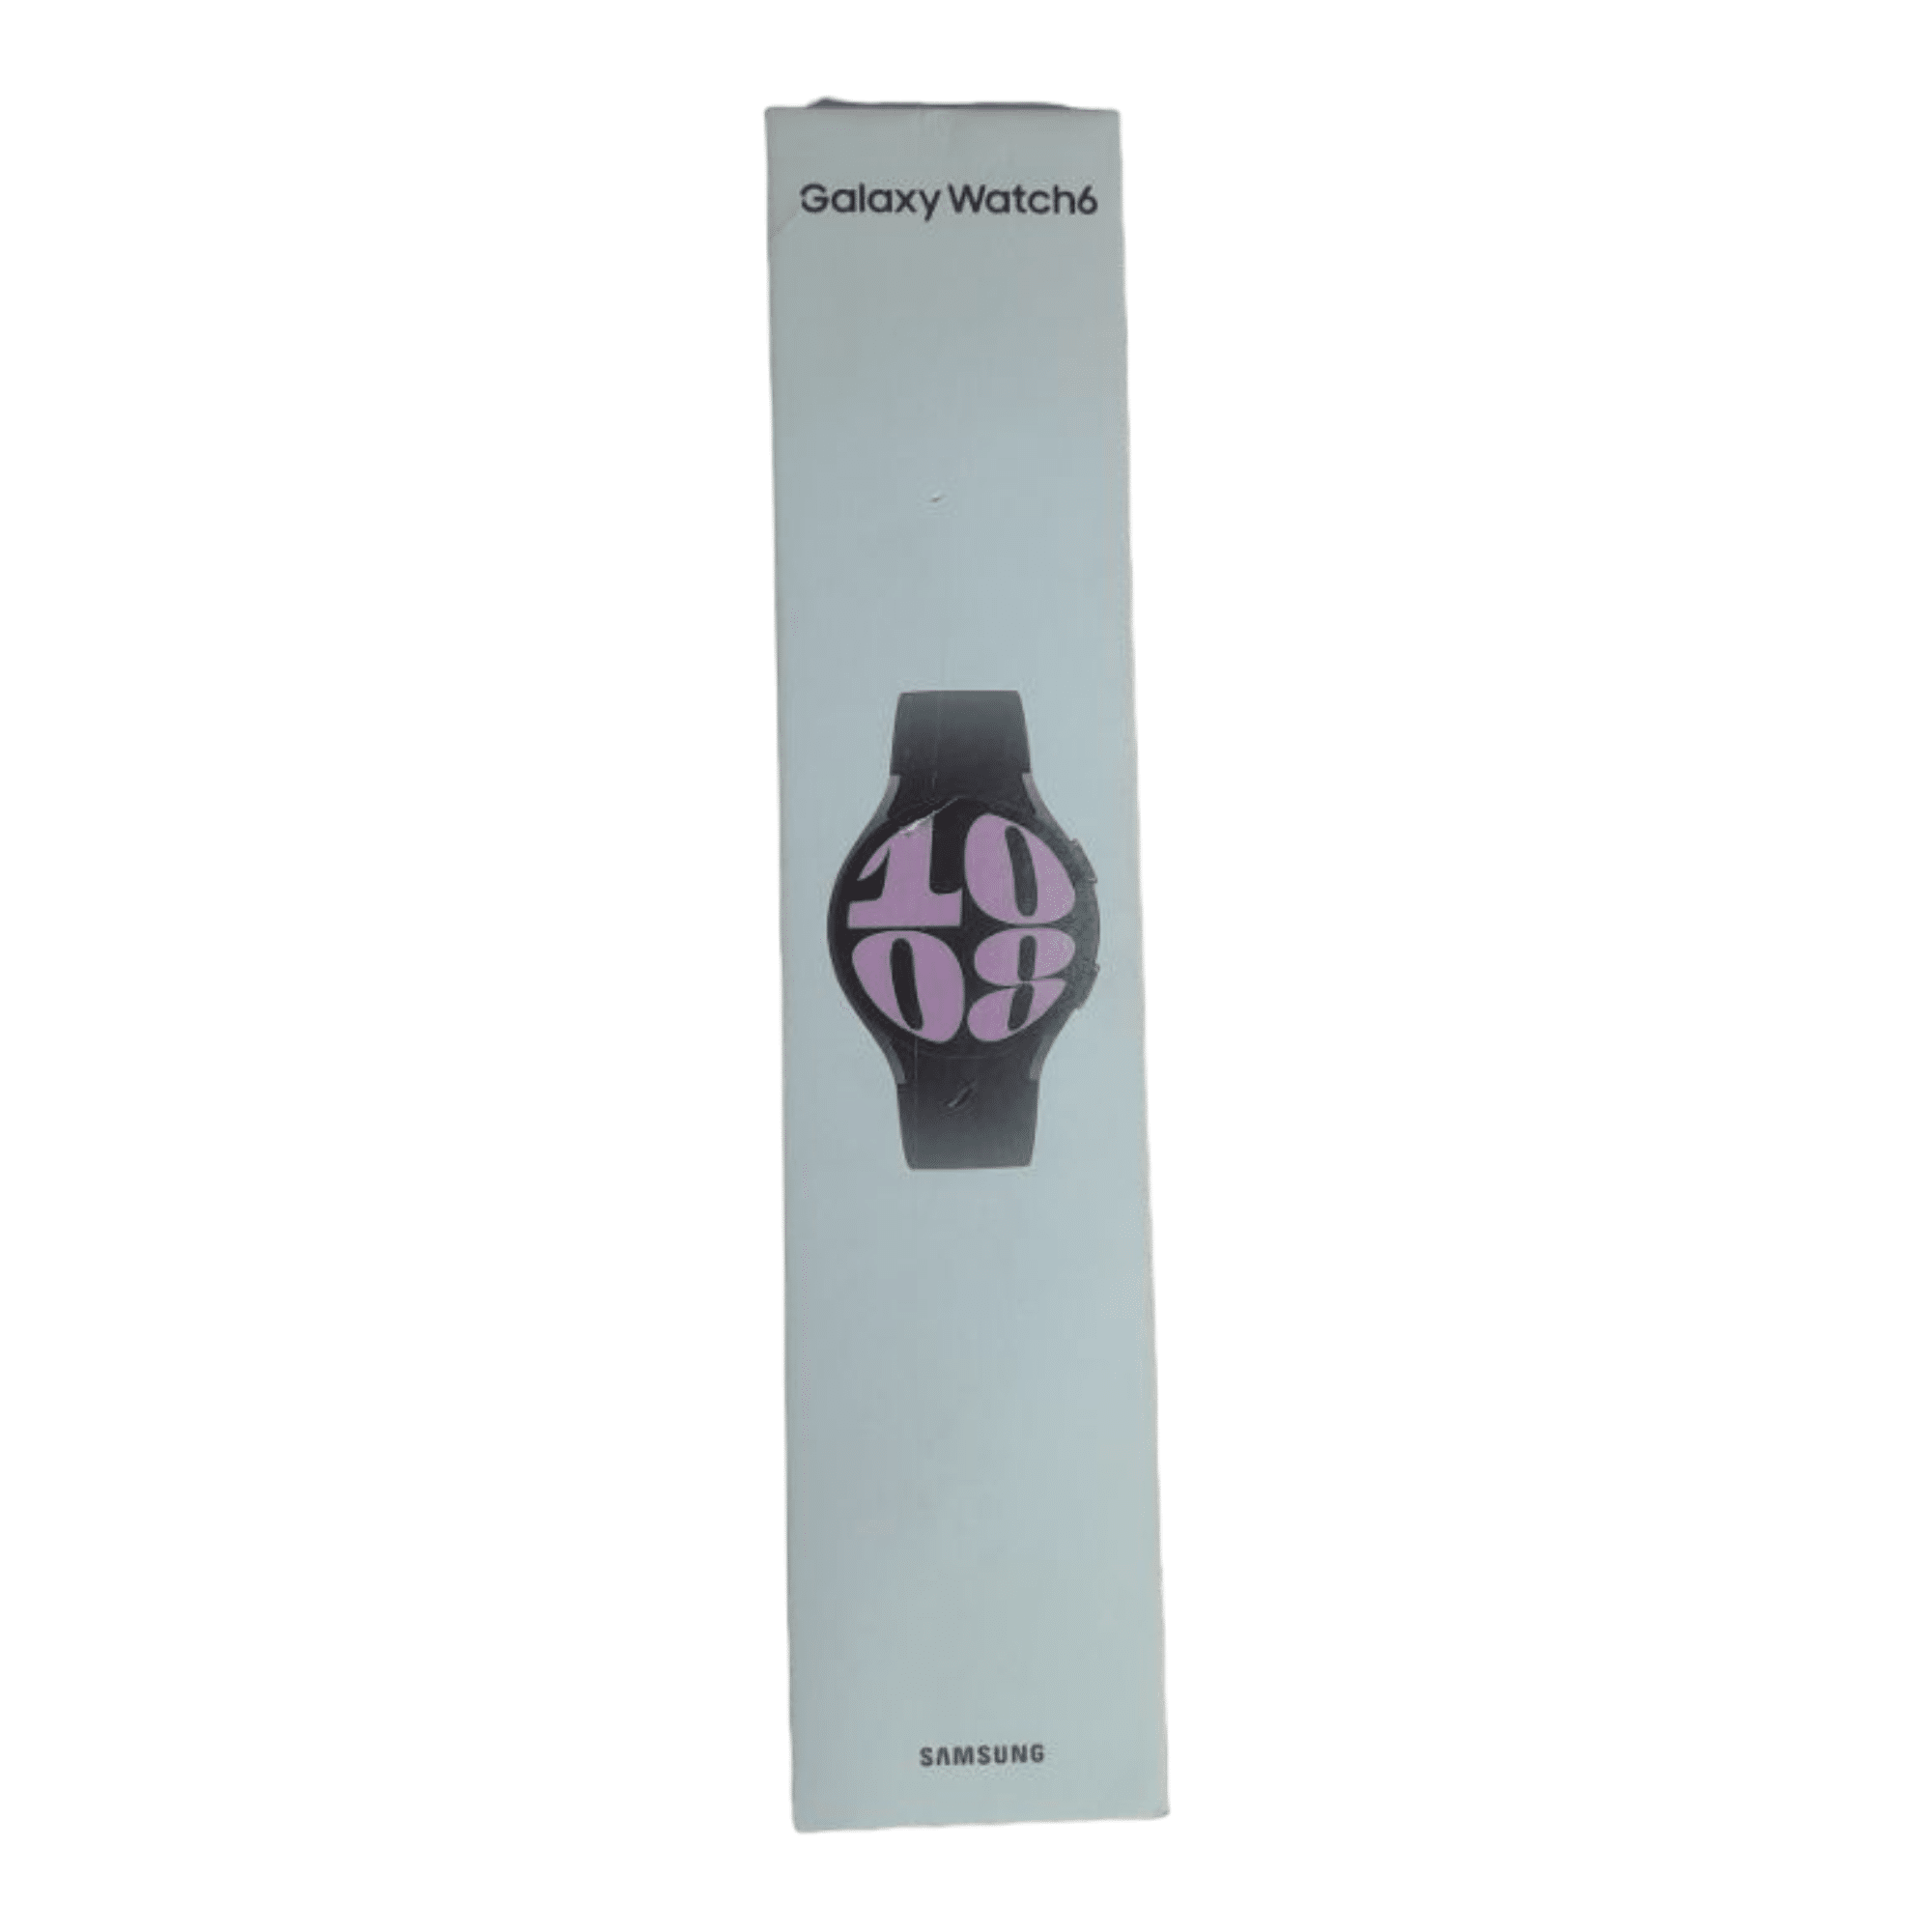 שעון חכם 40 מ”מ Samsung Galaxy Watch 6 סמסונג SMR930 אפור